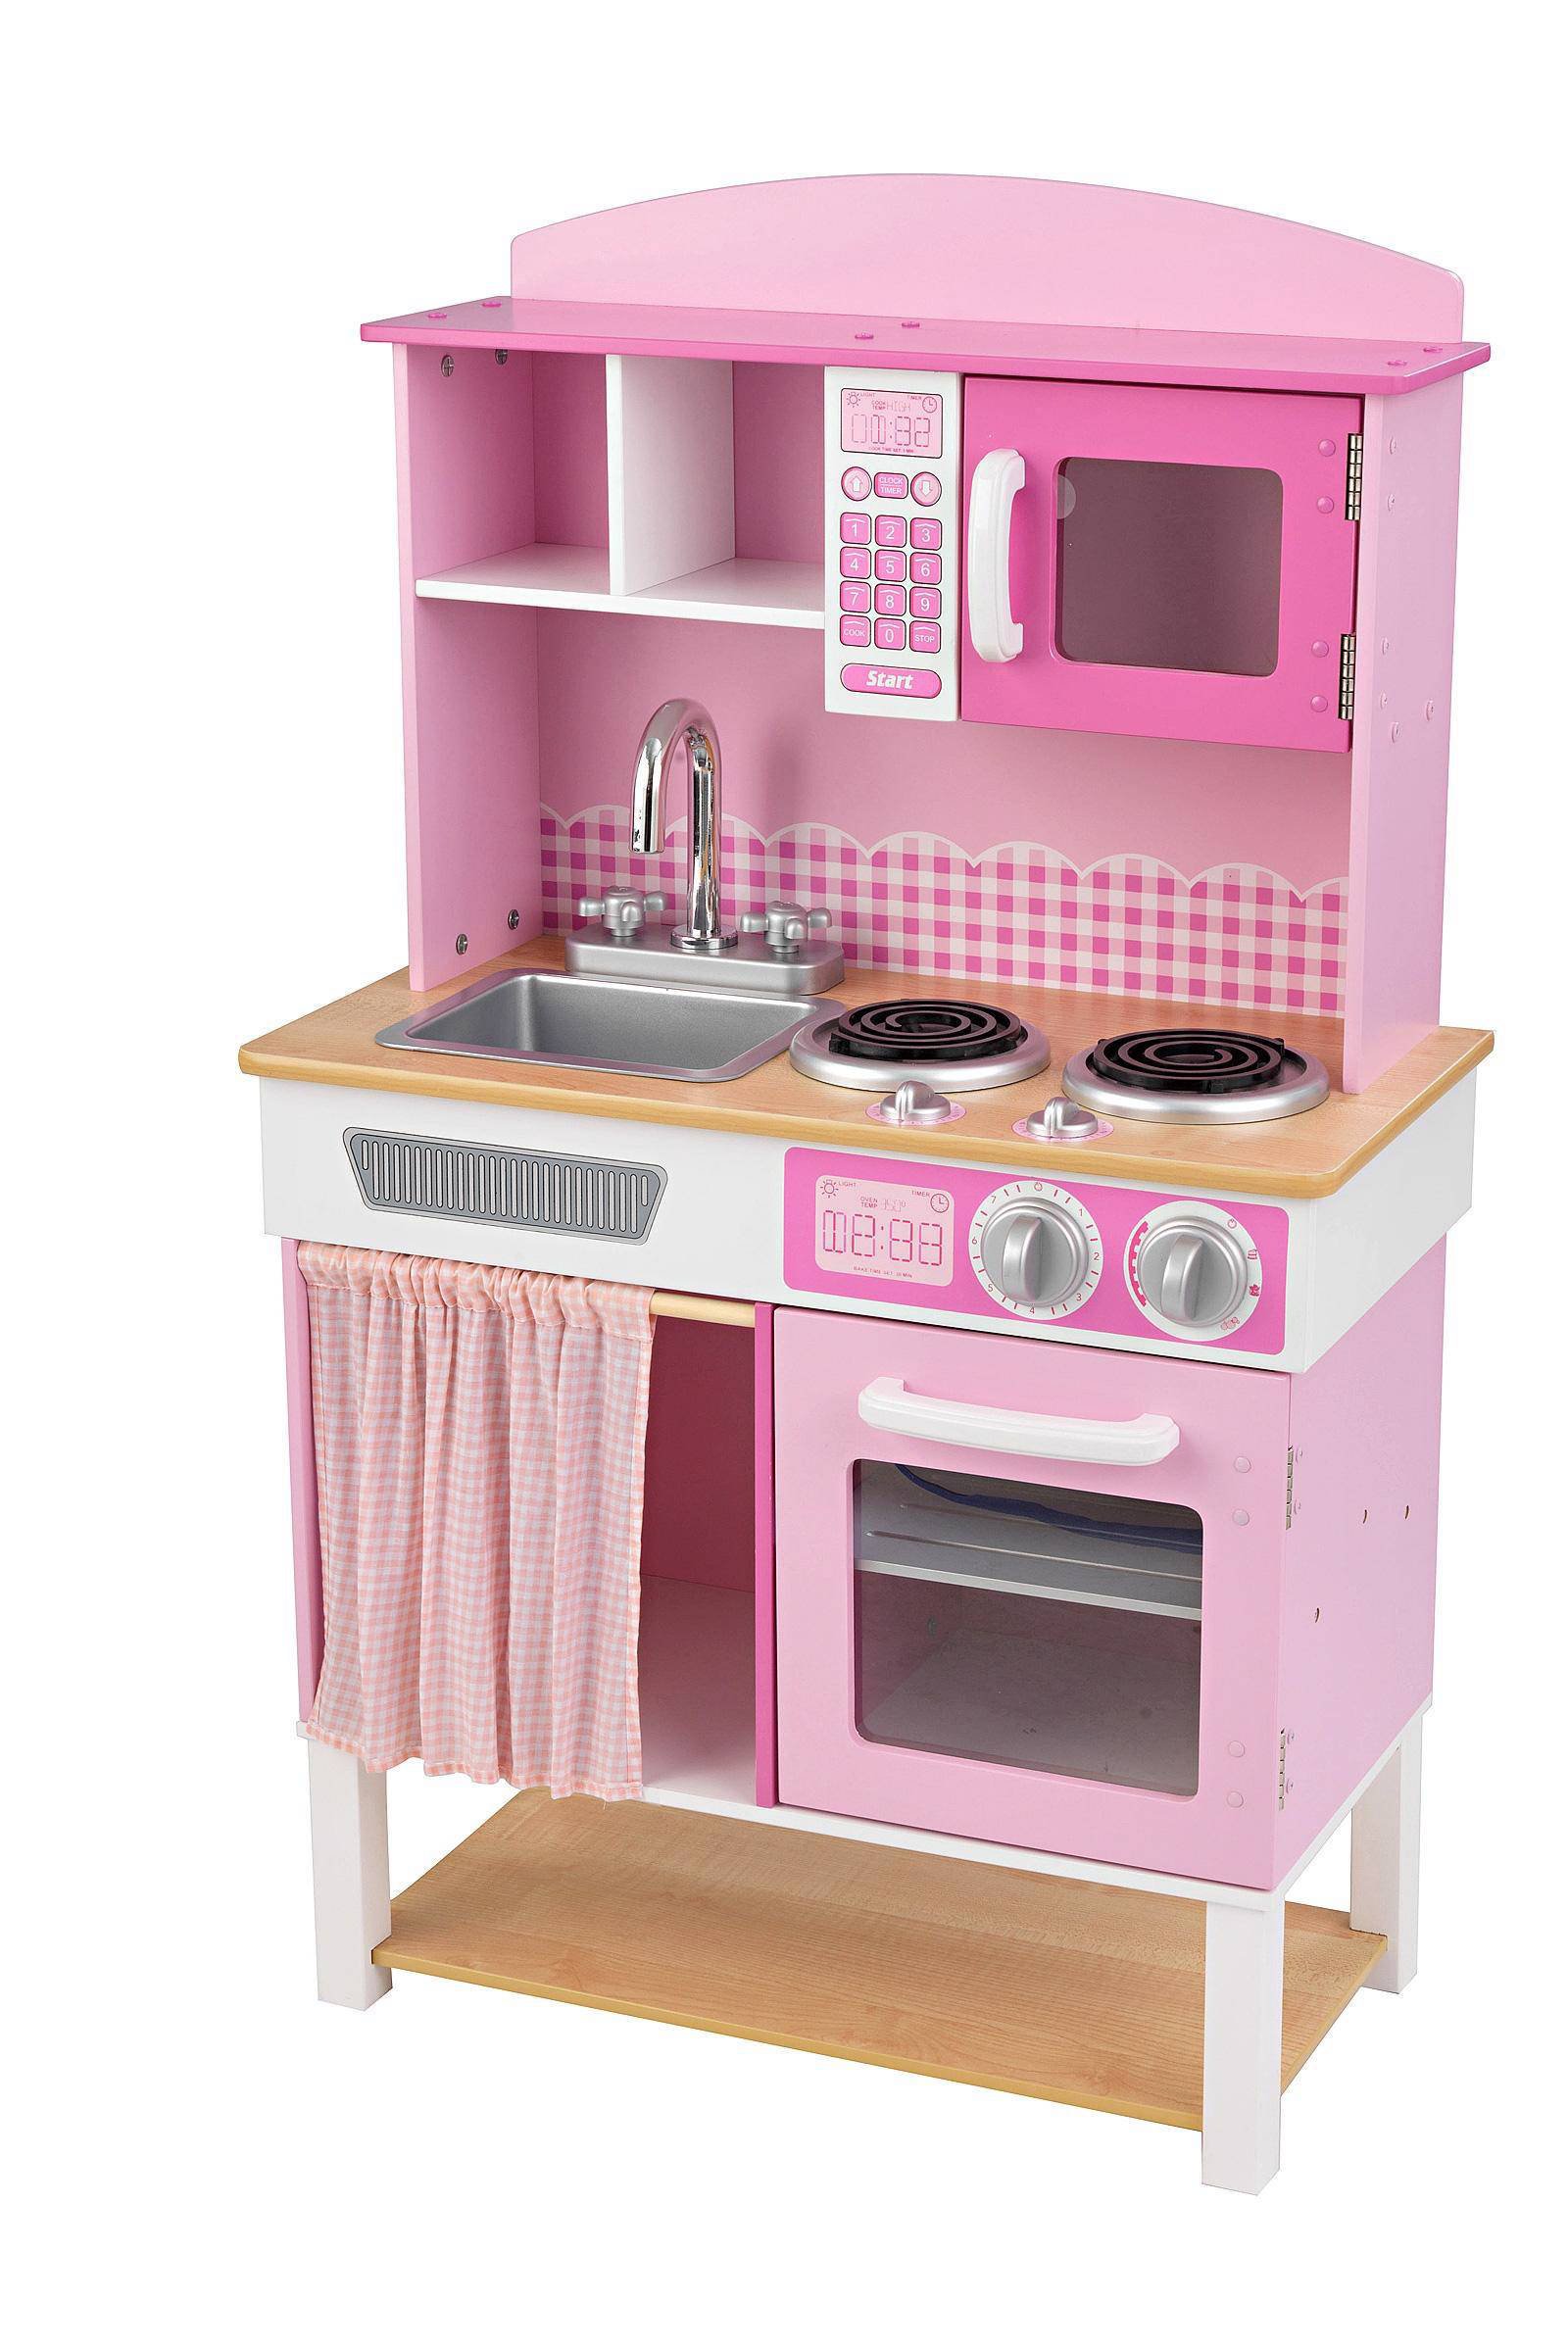 Atlantische Oceaan vrijwilliger pepermunt KidKraft Speelgoed keuken home Cookin' 61x34x101 cm roze 53198 -  Klokken.shop